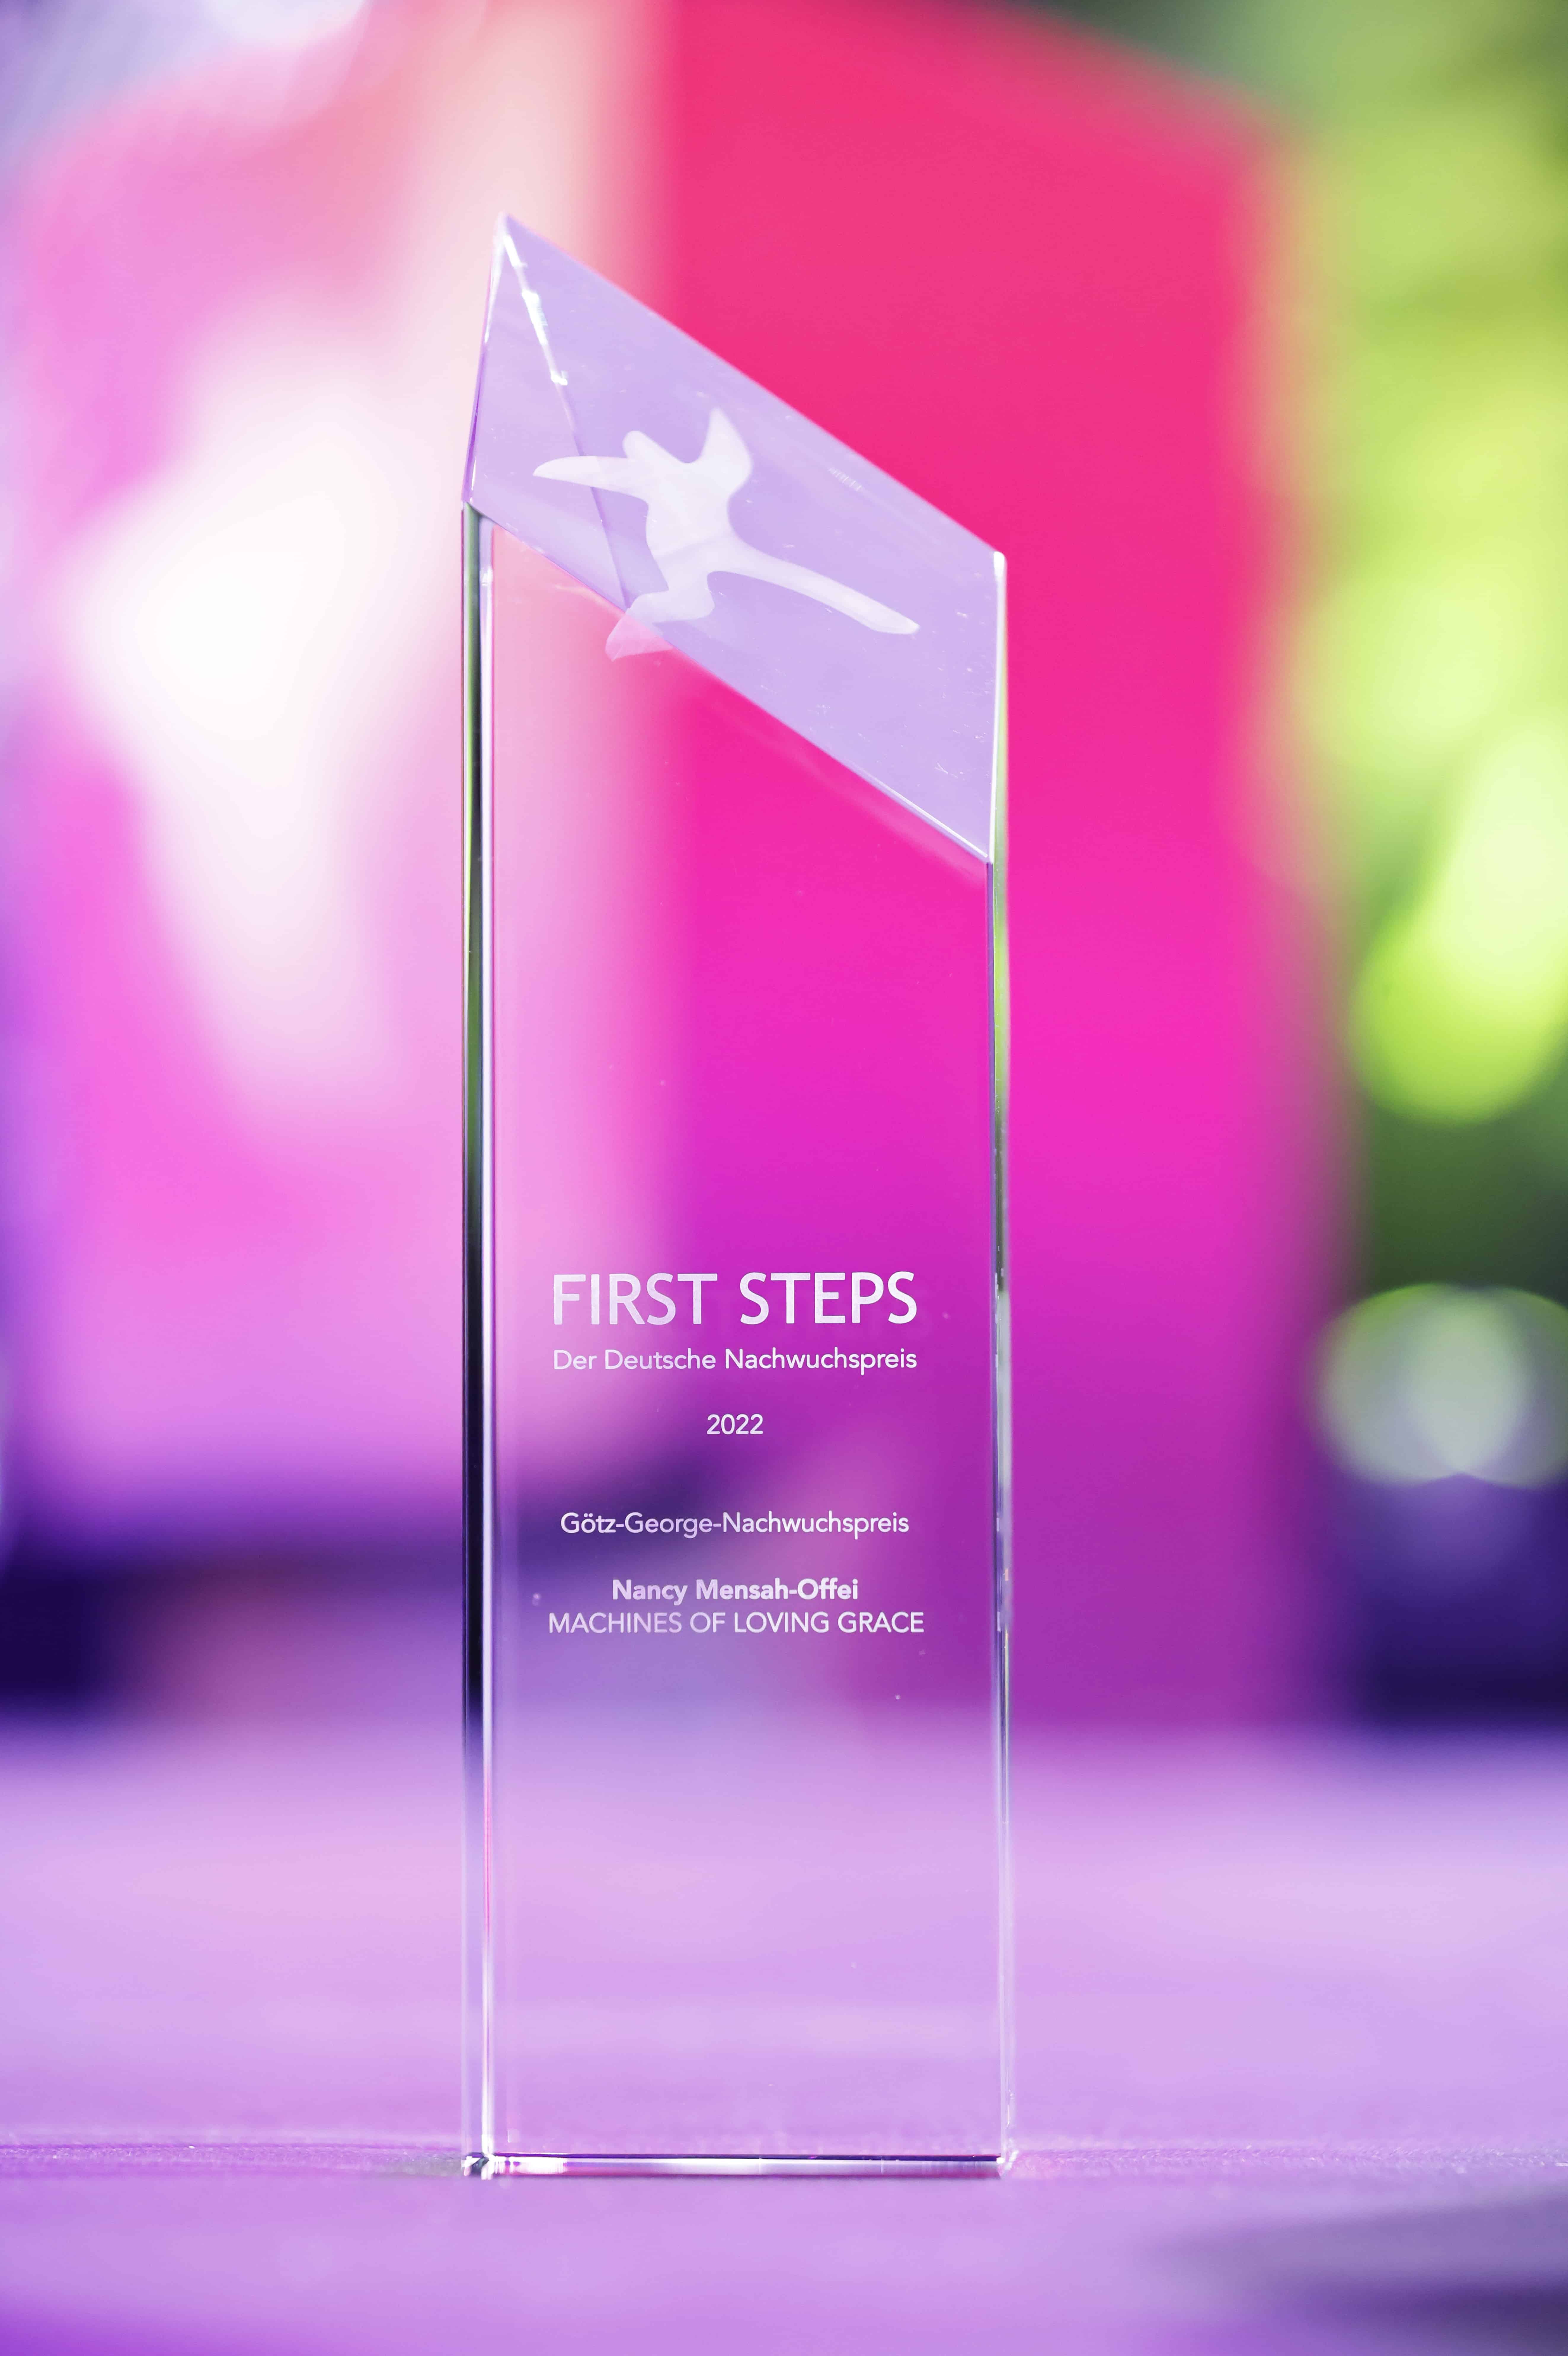 FIRST STEPS Award 2022